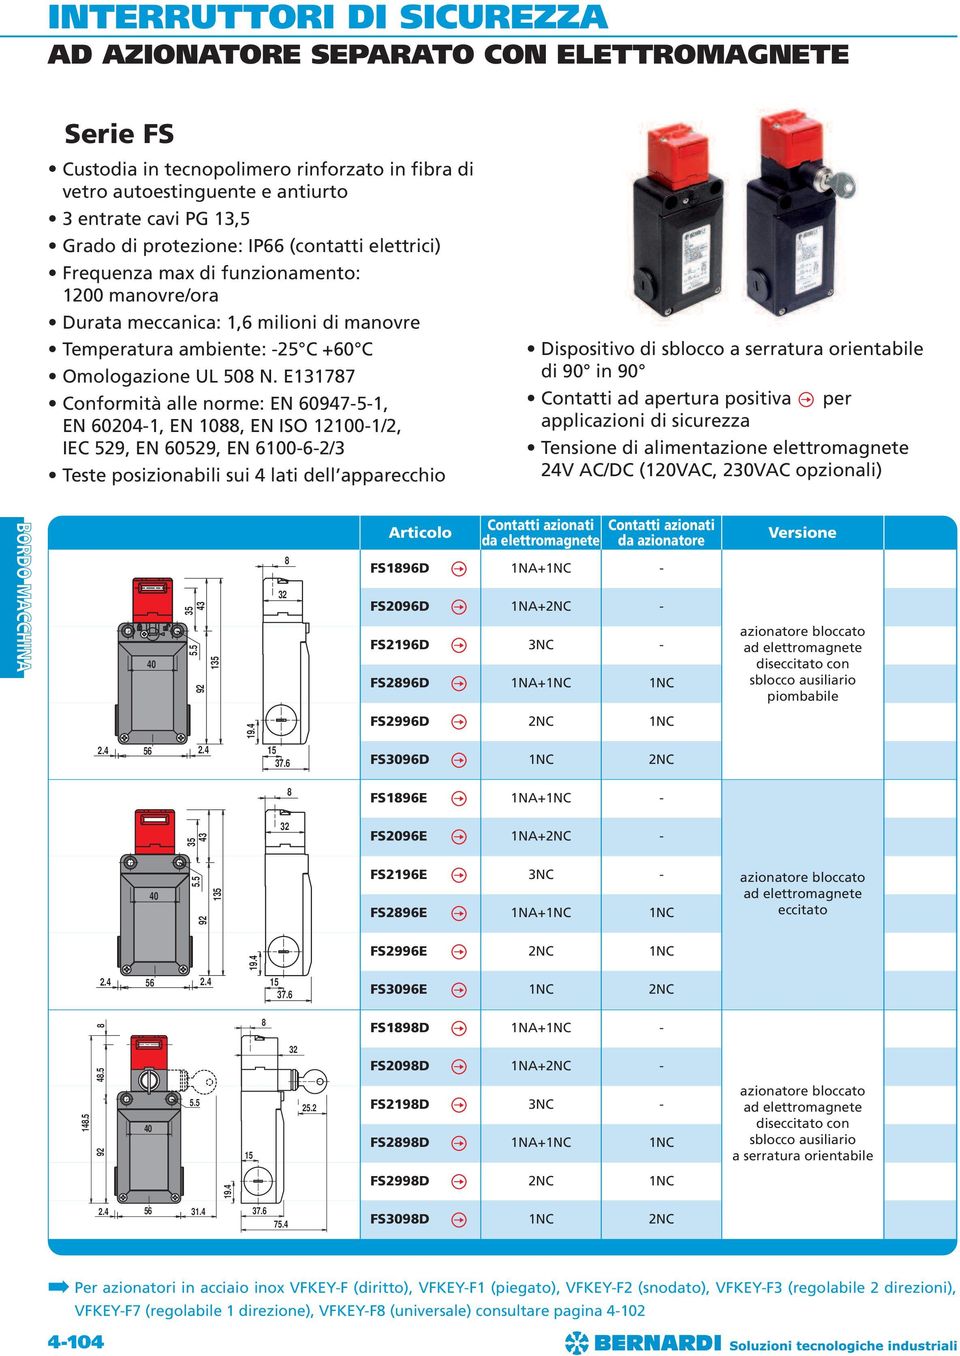 E13177 Conformità alle norme: EN 60947-5-1, EN 60204-1, EN 10, EN ISO 12100-1/2, IEC 529, EN 60529, EN 6100-6-2/3 Teste posizionabili sui 4 lati dell apparecchio Dispositivo di sblocco a serratura